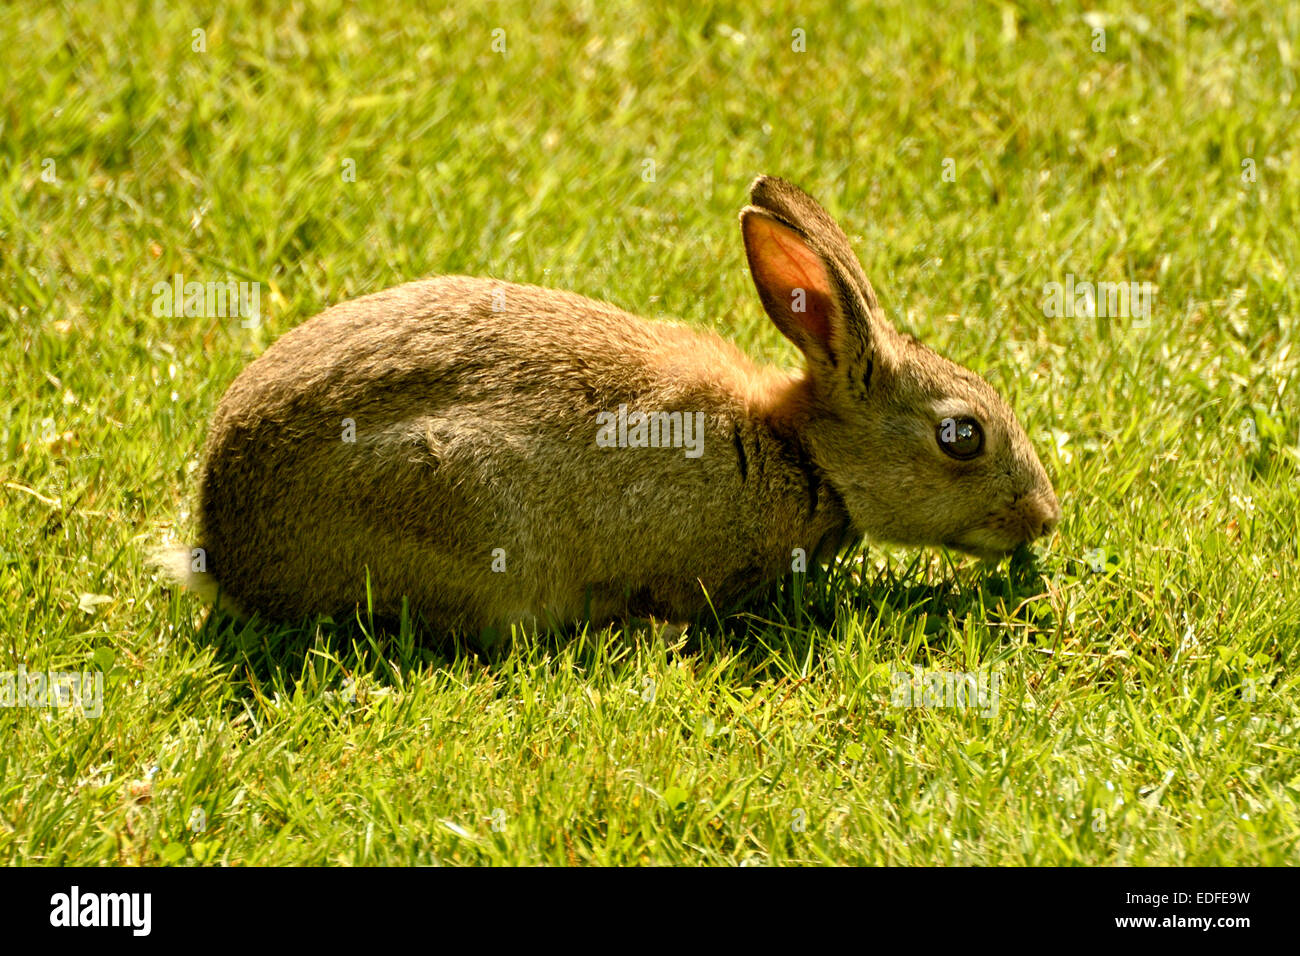 Seul le lapin mange de l'HERBE SUR UNE PELOUSE AU Royaume-Uni Banque D'Images